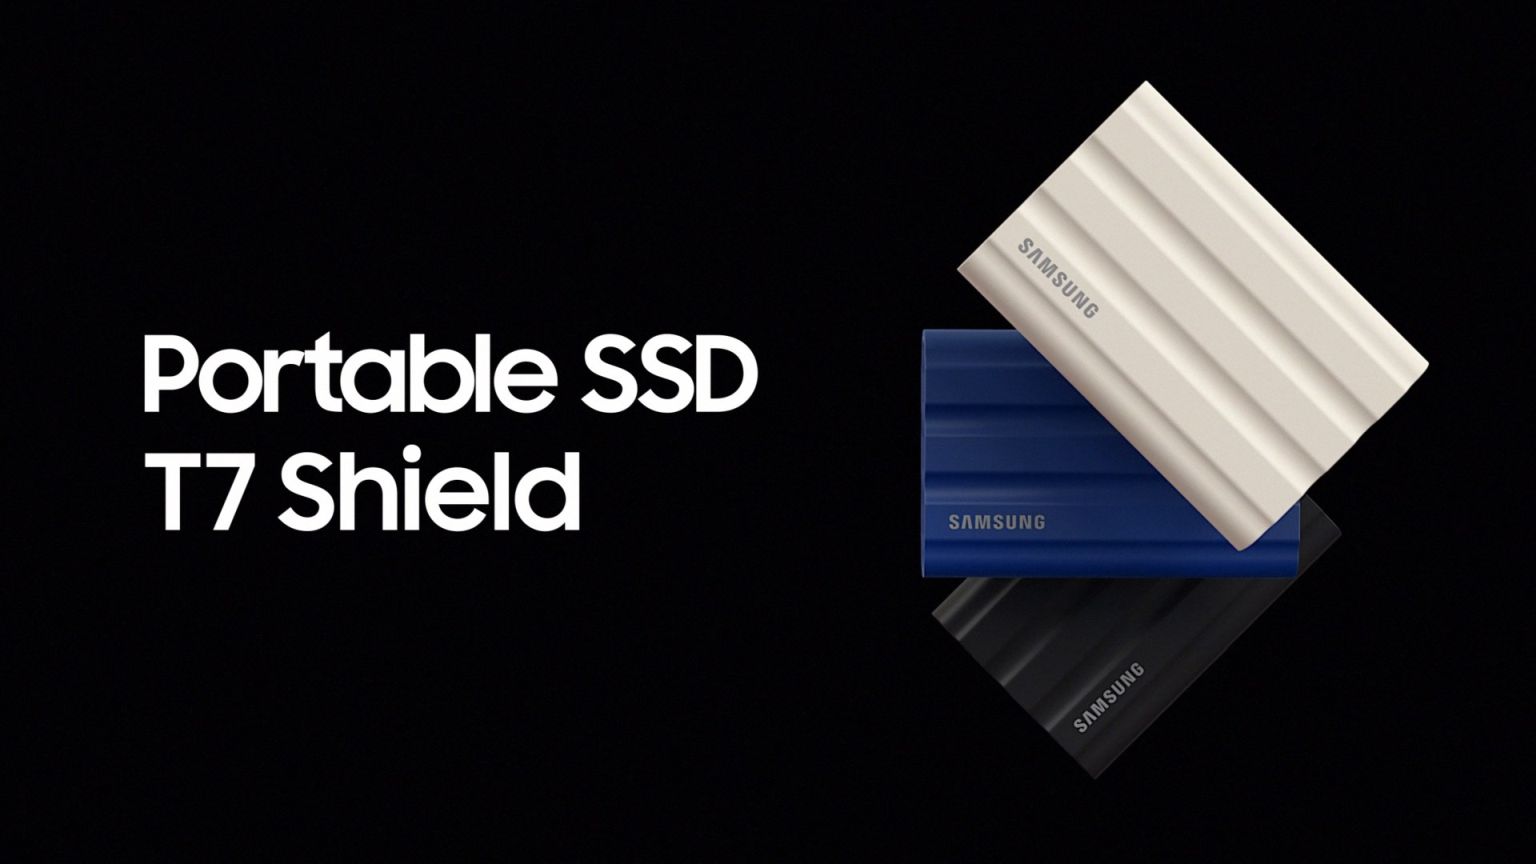 Samsung: dysk SSD T7 Shield wielkości karty kredytowej